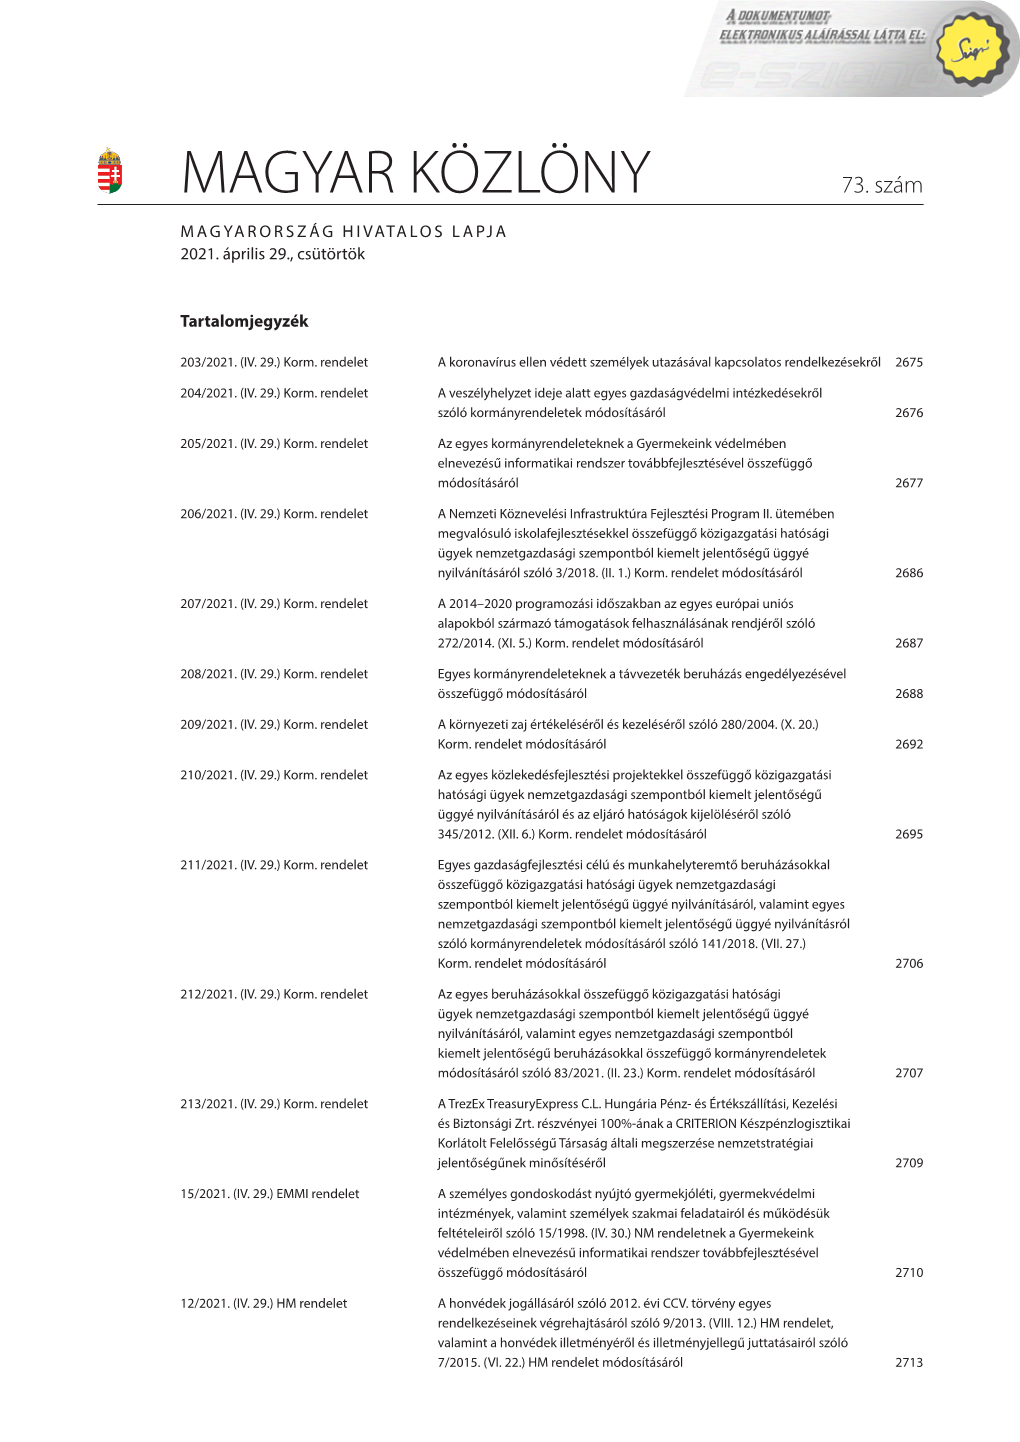 204/2021. (IV. 29.) Korm. Rendelet a Veszélyhelyzet Ideje Alatt Egyes Gazdaságvédelmi Intézkedésekről Szóló Kormányrendeletek Módosításáról 2676